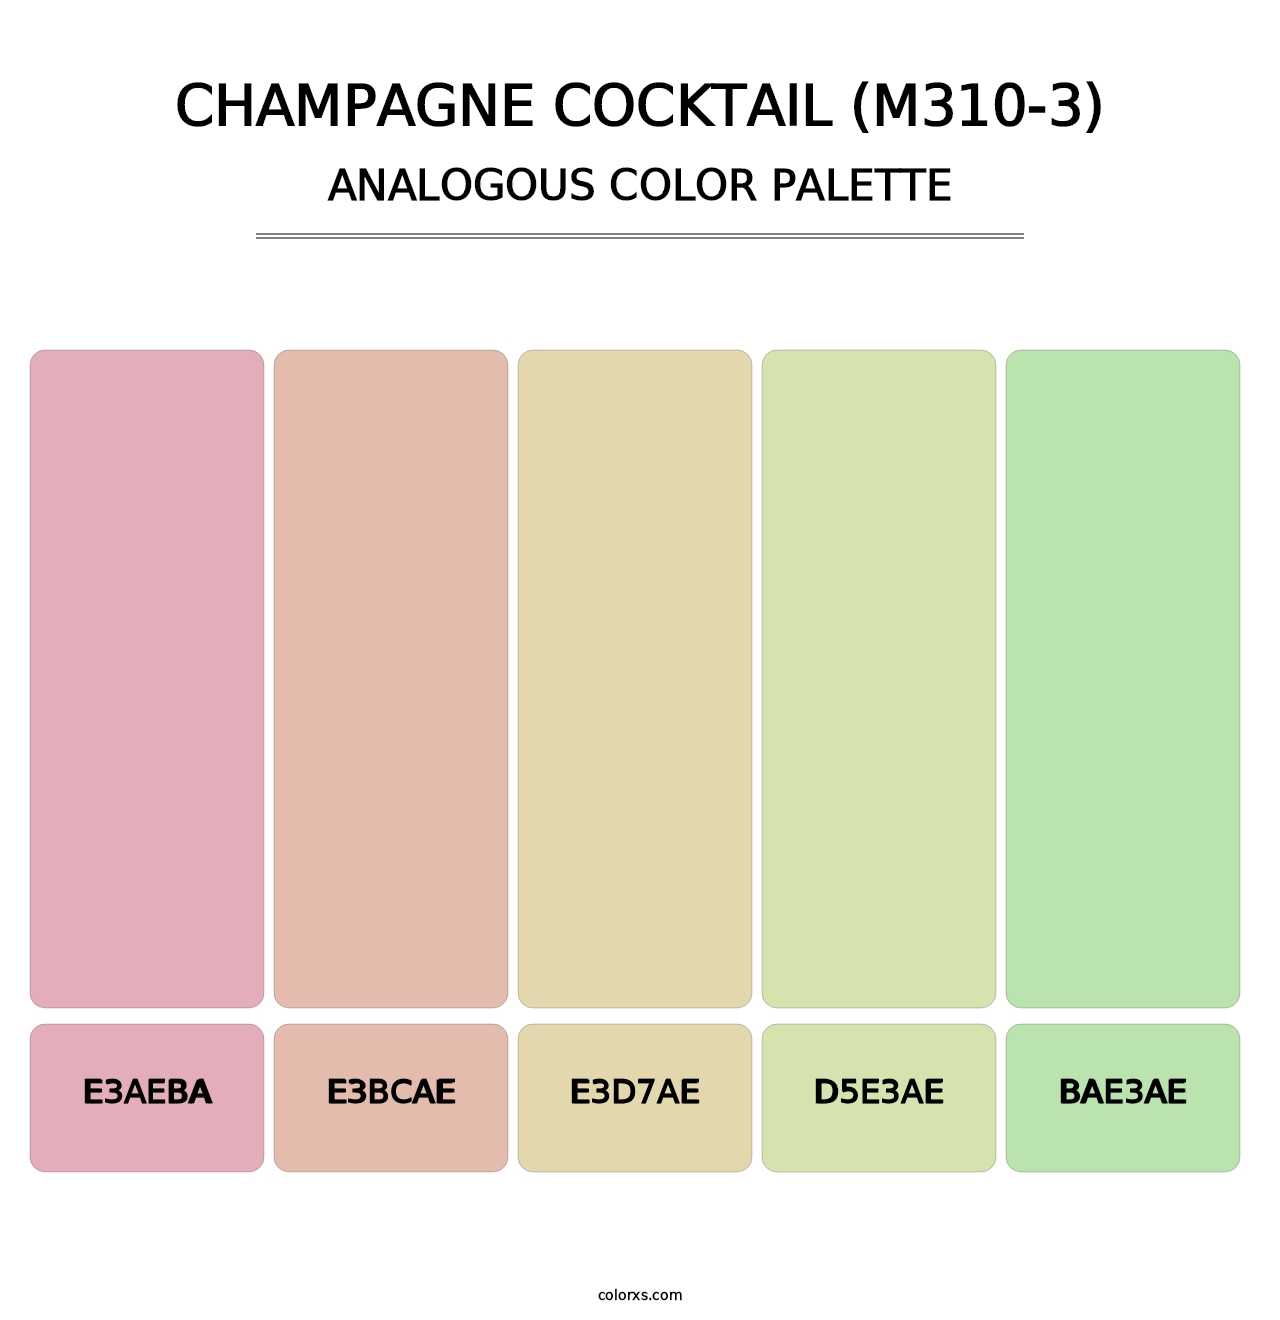 Champagne Cocktail (M310-3) - Analogous Color Palette